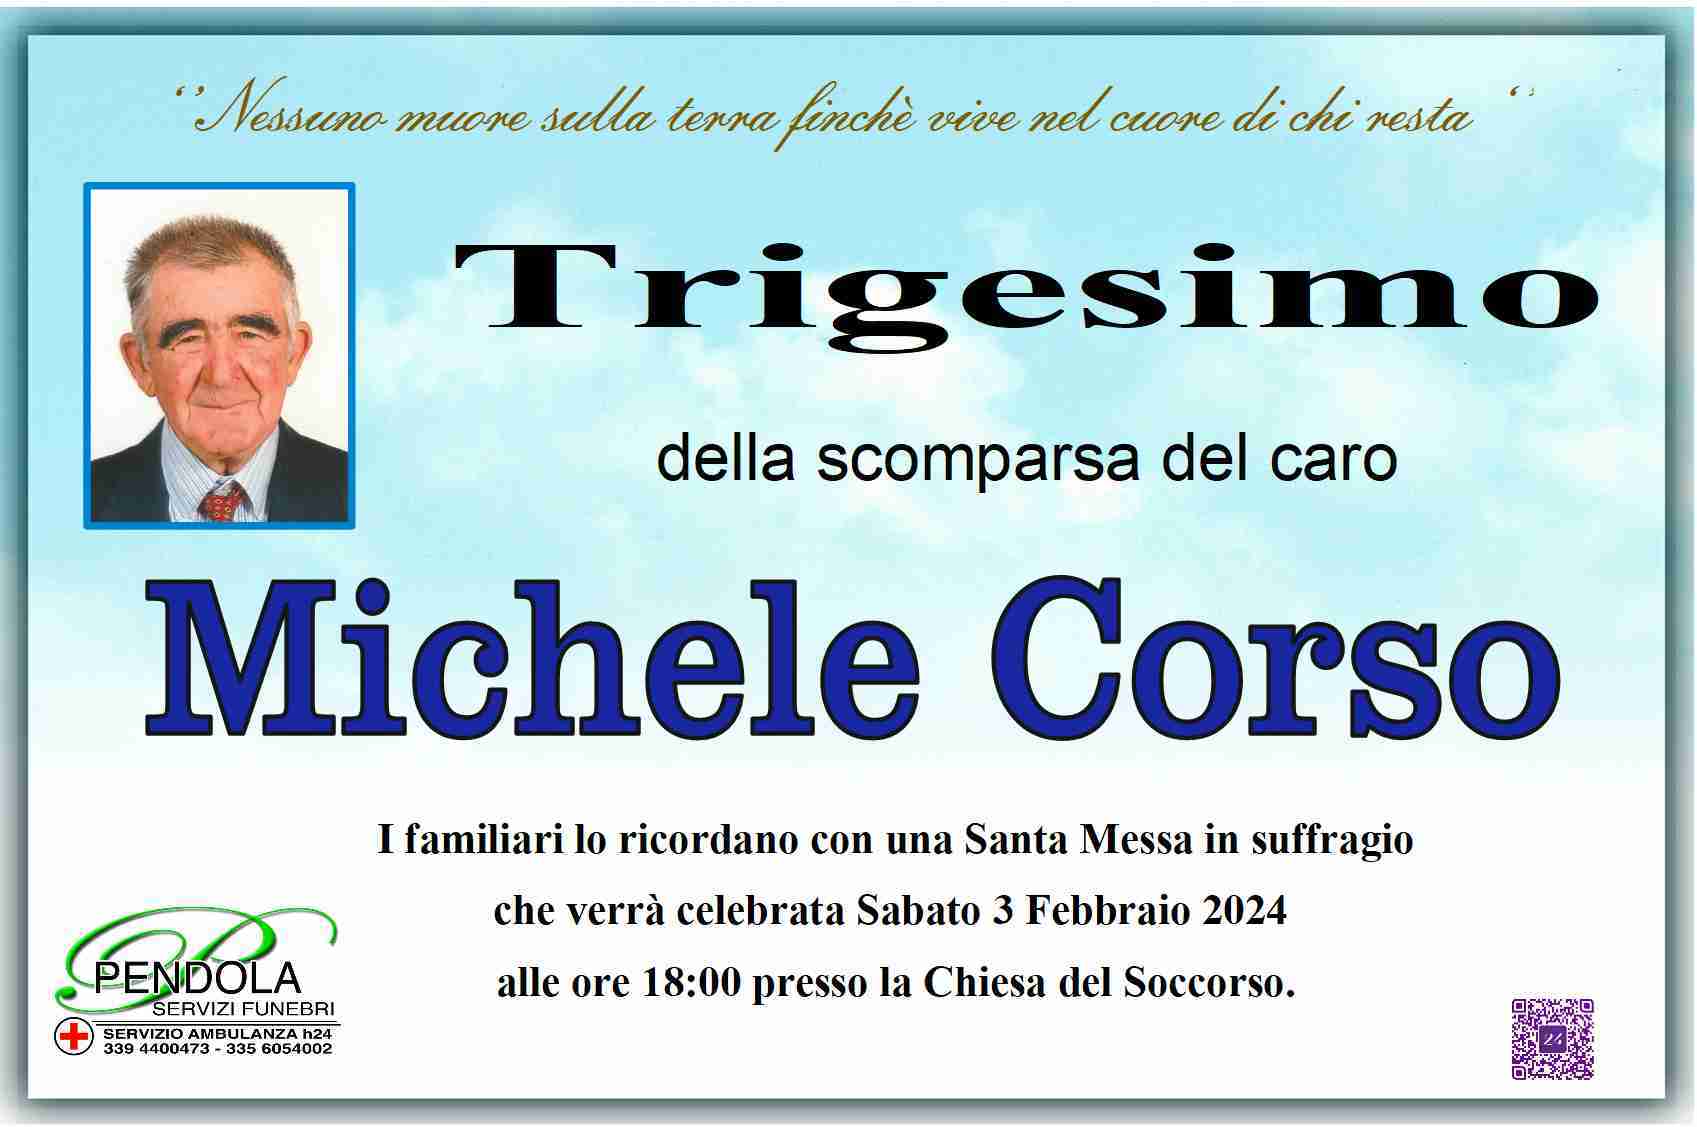 Michele Corso